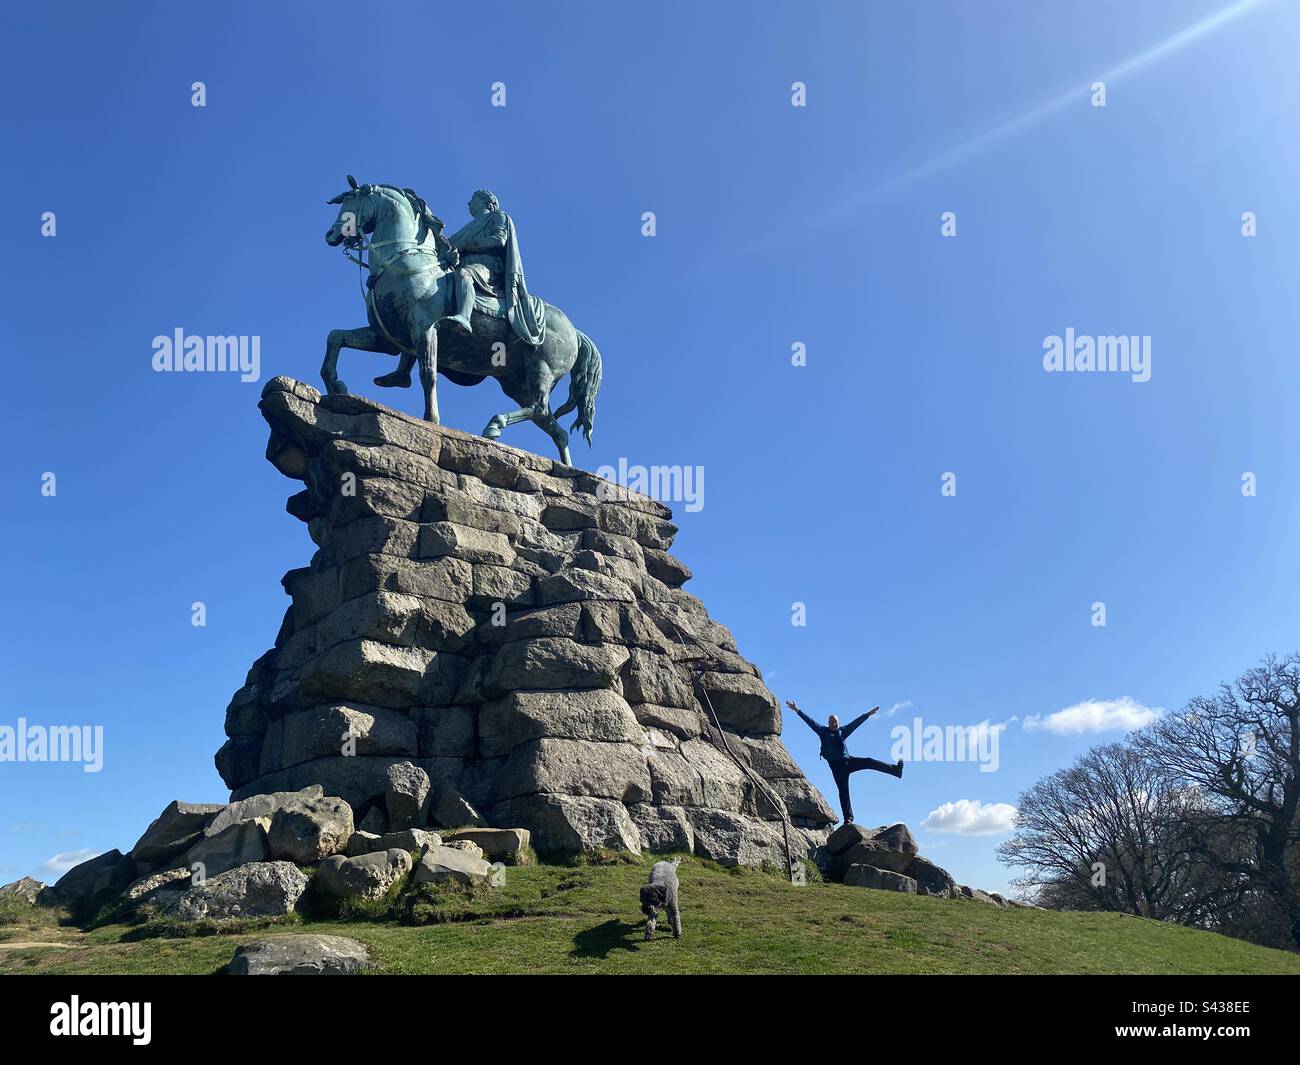 Una persona si posa per una fotografia in piedi accanto alla statua di Giorgio III sul suo cavallo di rame nel Windsor Great Park in Inghilterra. Foto Stock